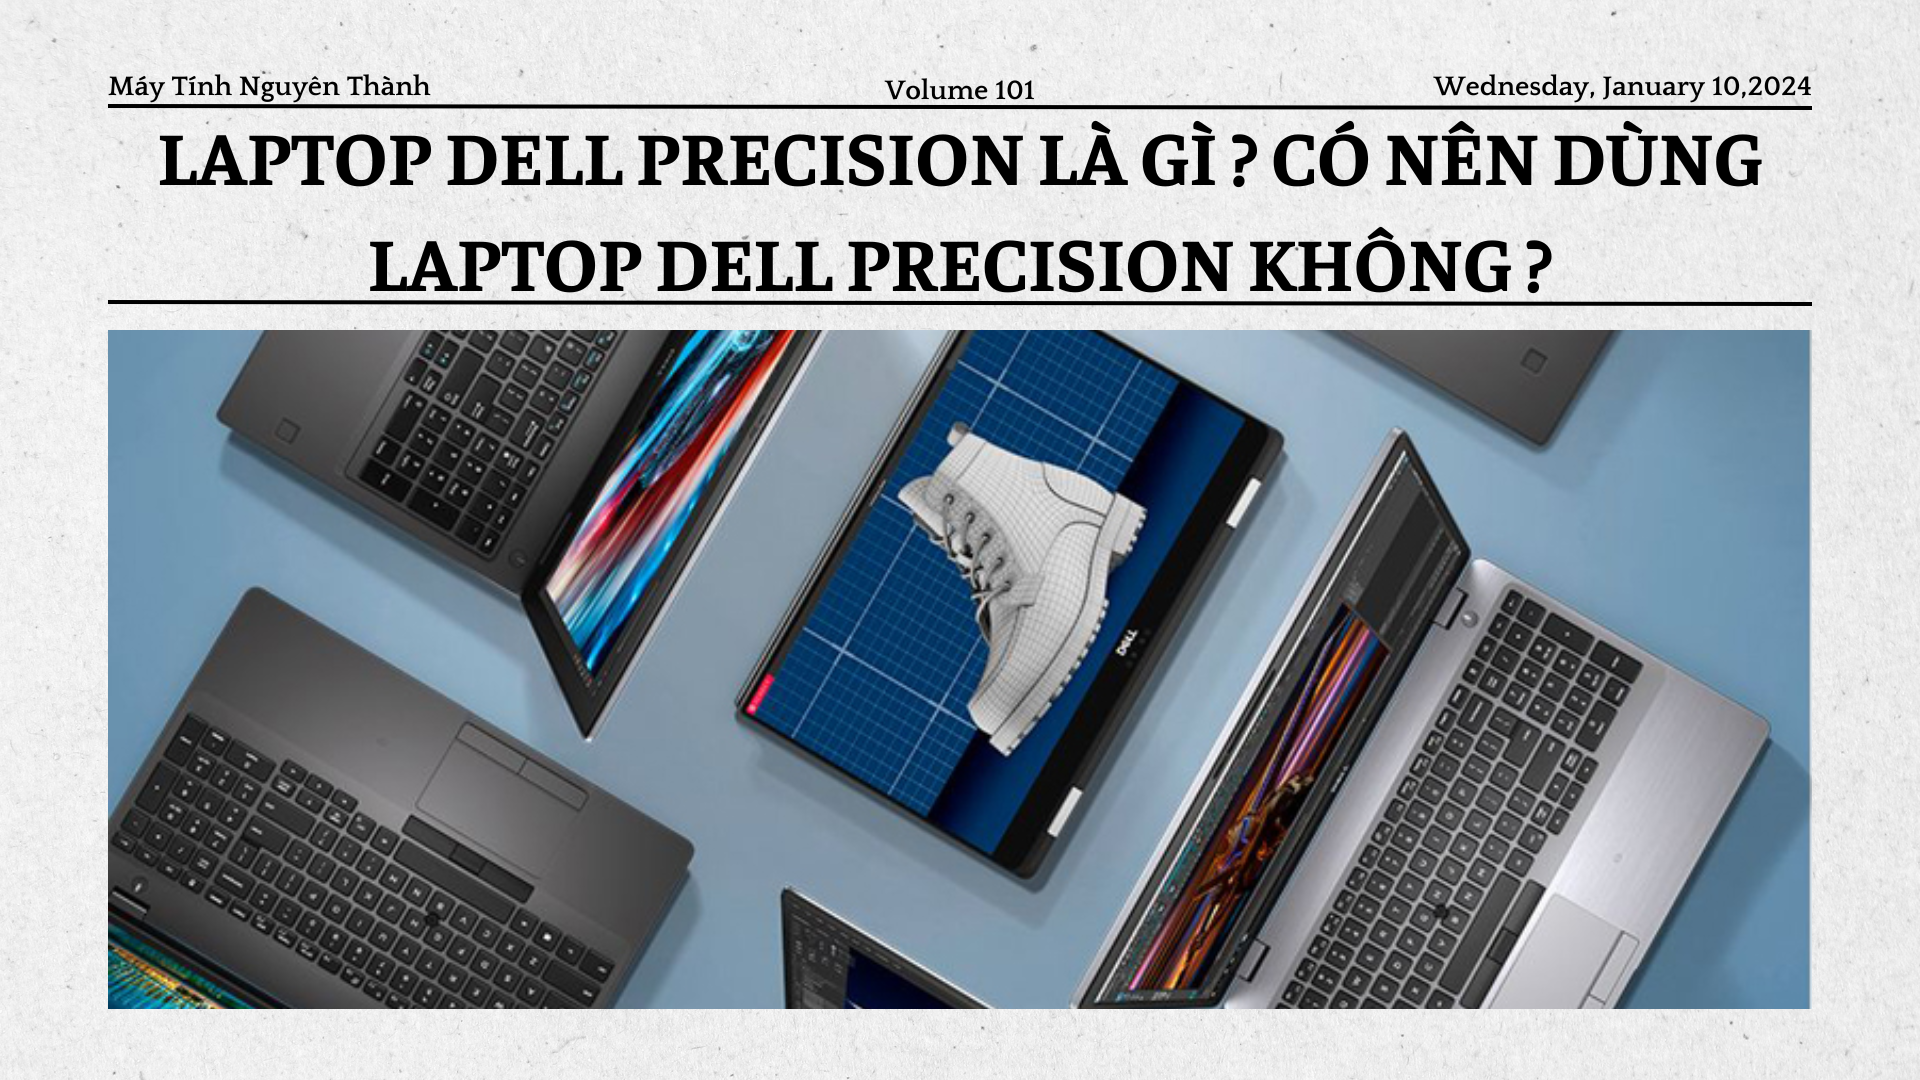 Laptop Dell Precision là gì? Có nên dùng Dell Precision không